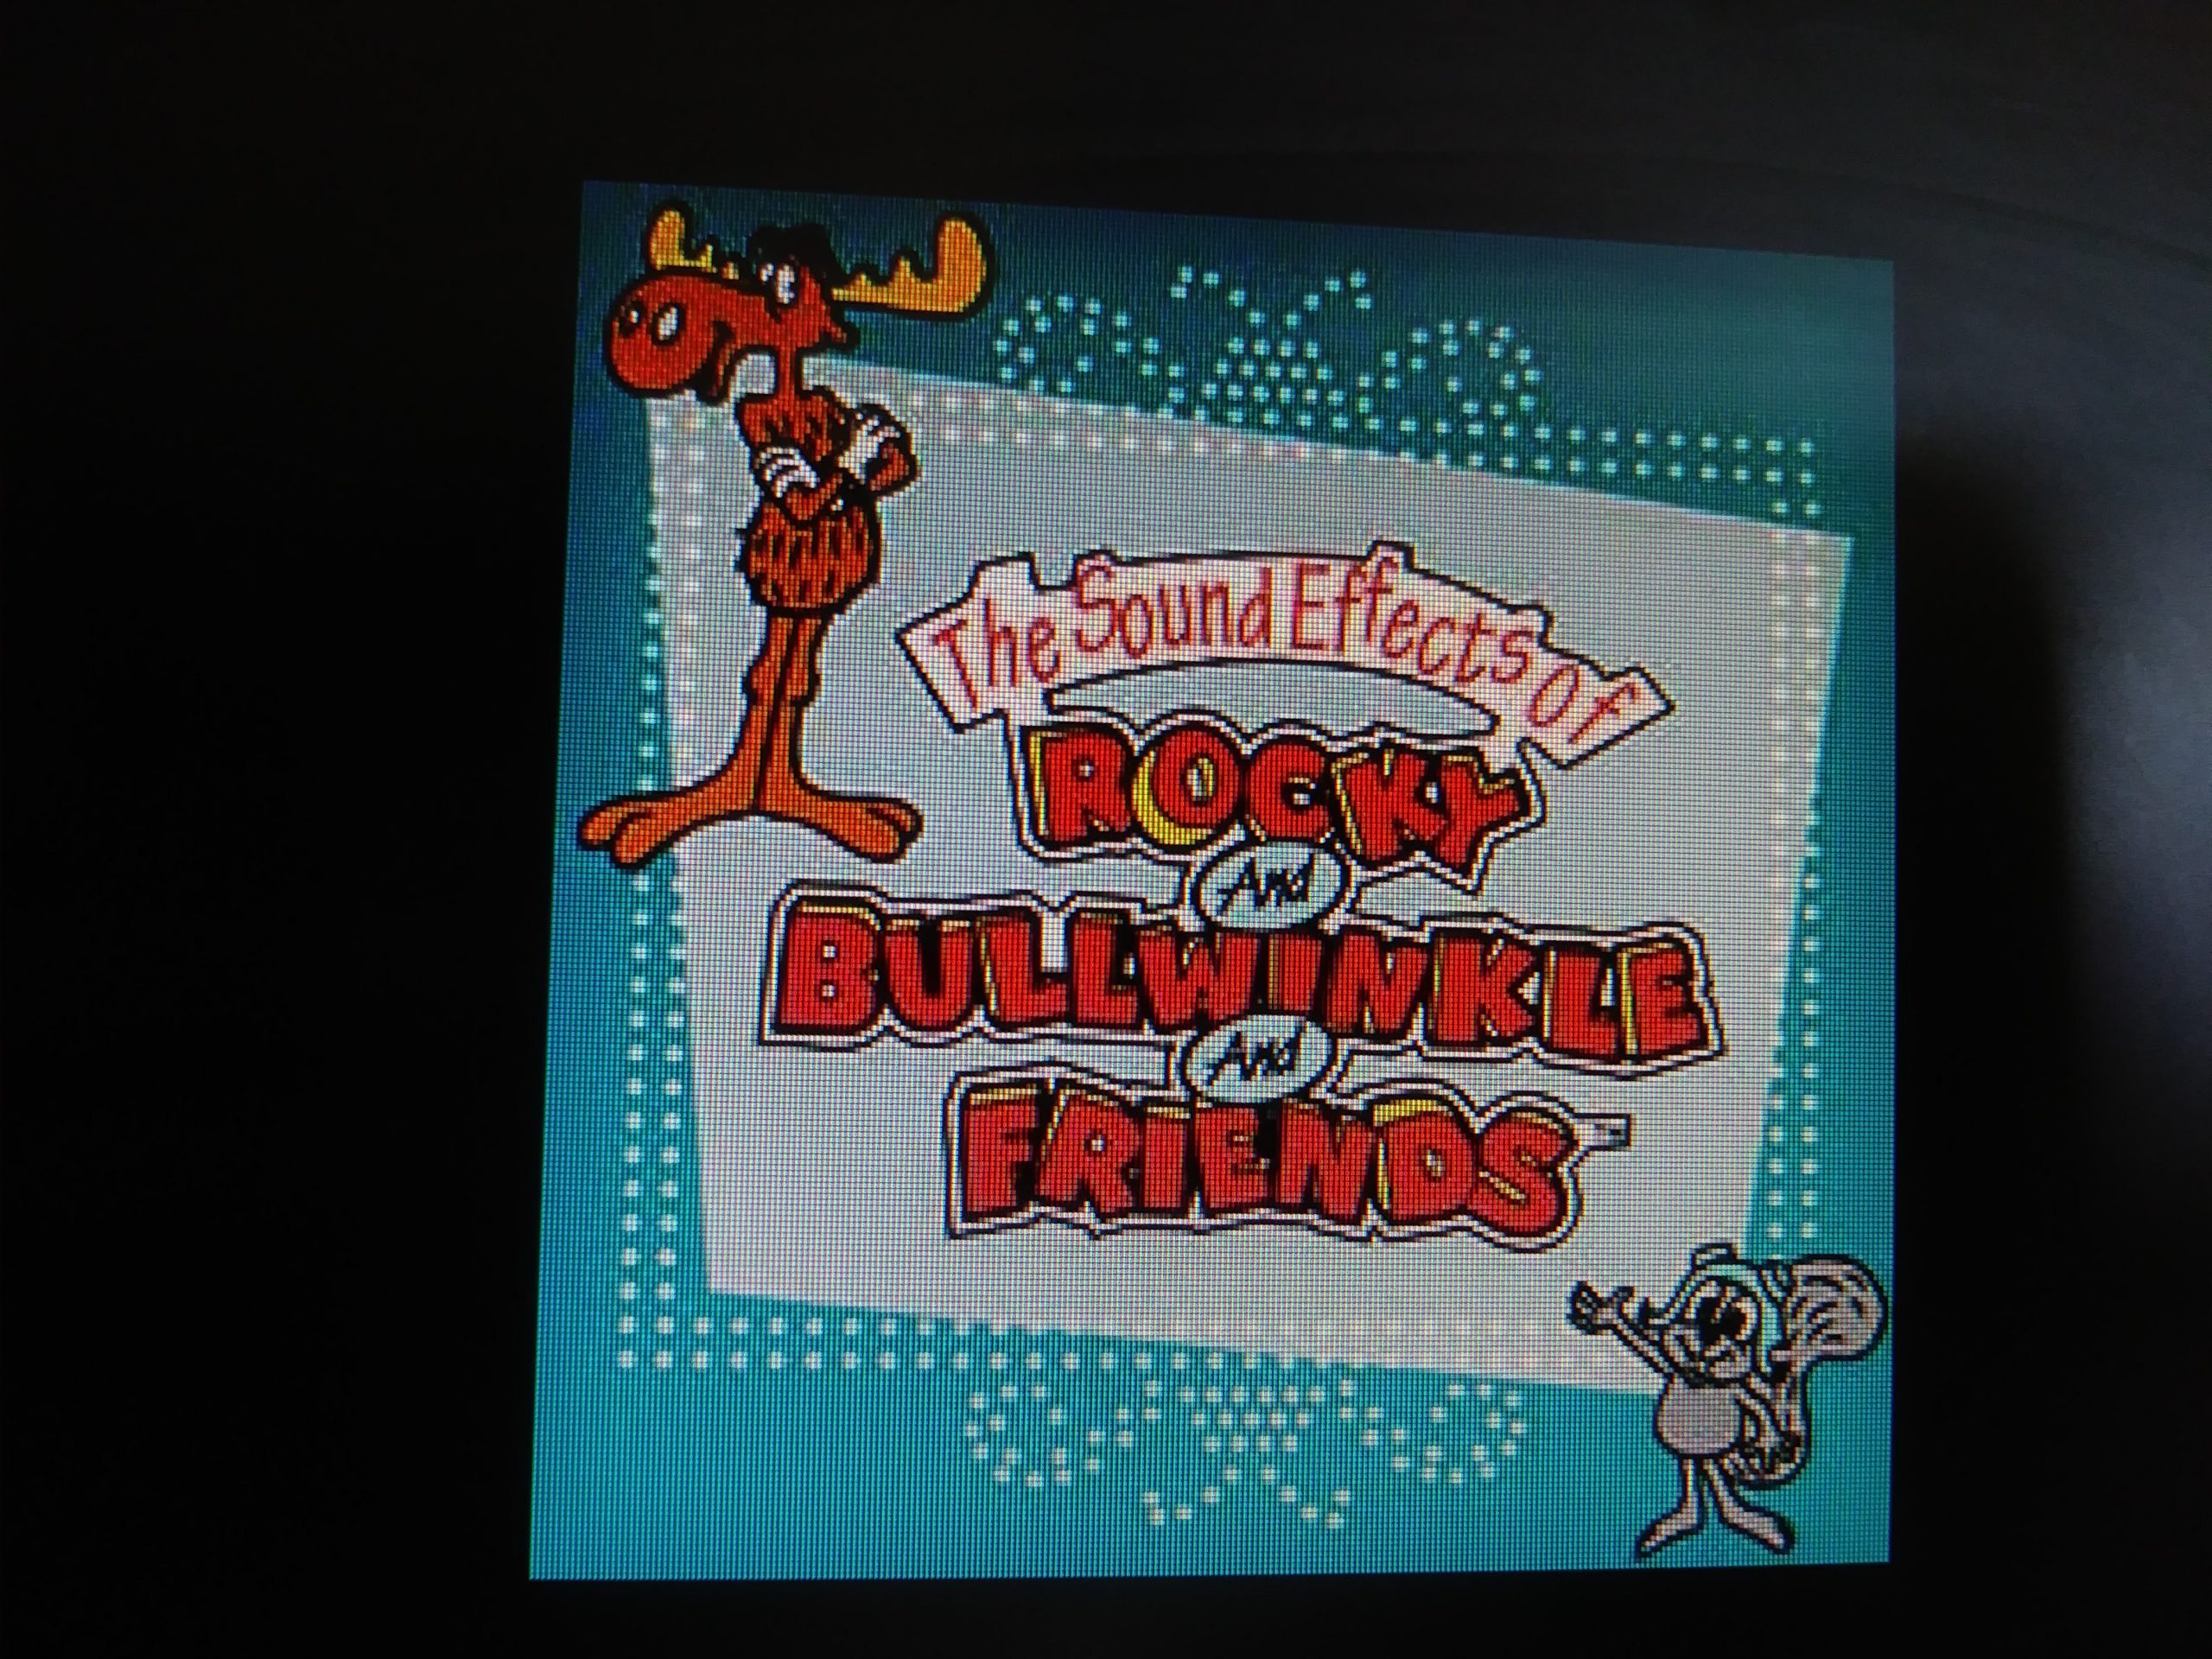 Rocky & Bullwinkle Sound Effects